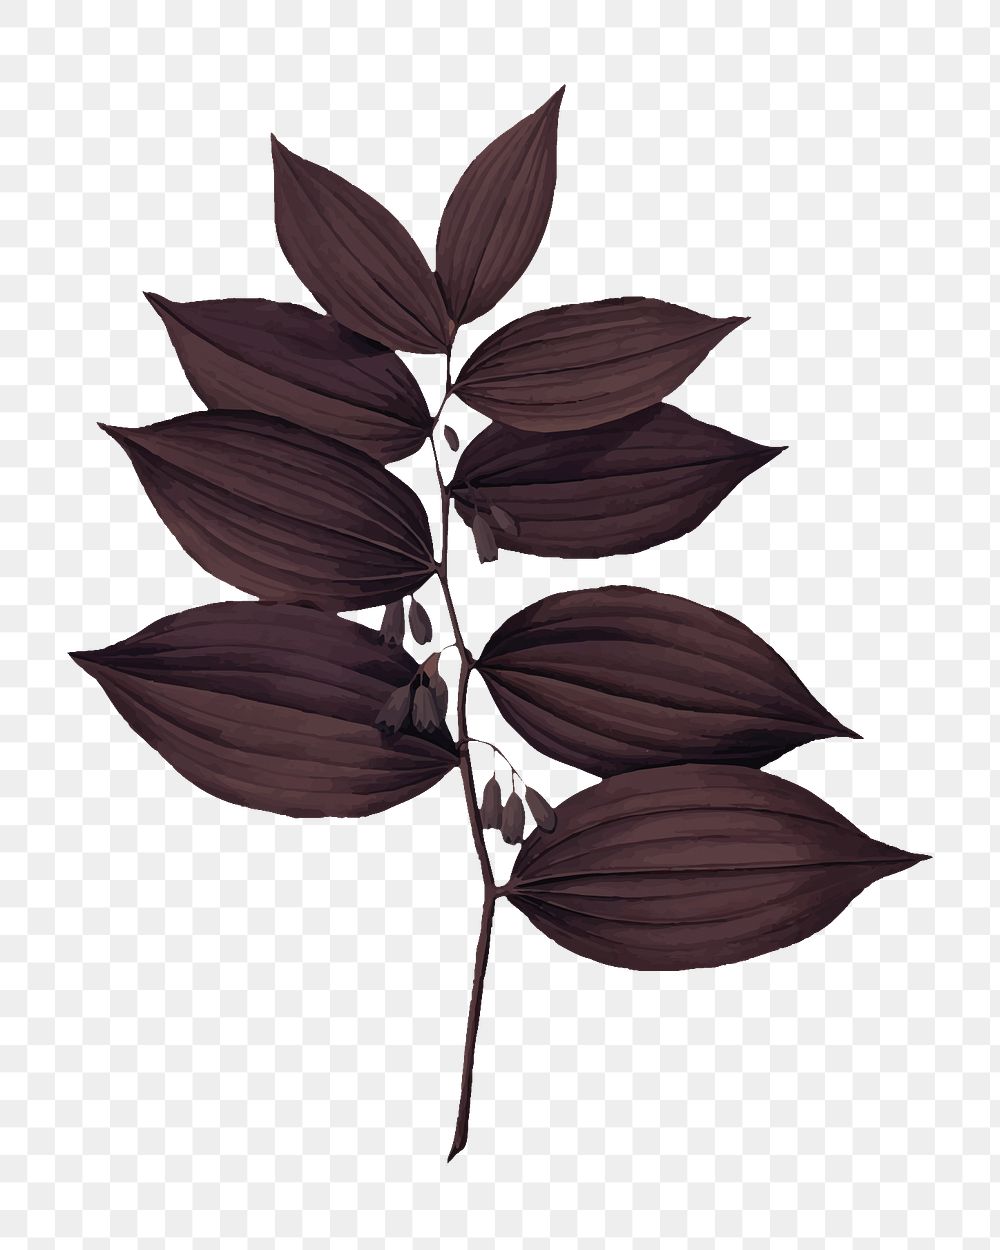 Brown leaf branch png sticker, transparent background